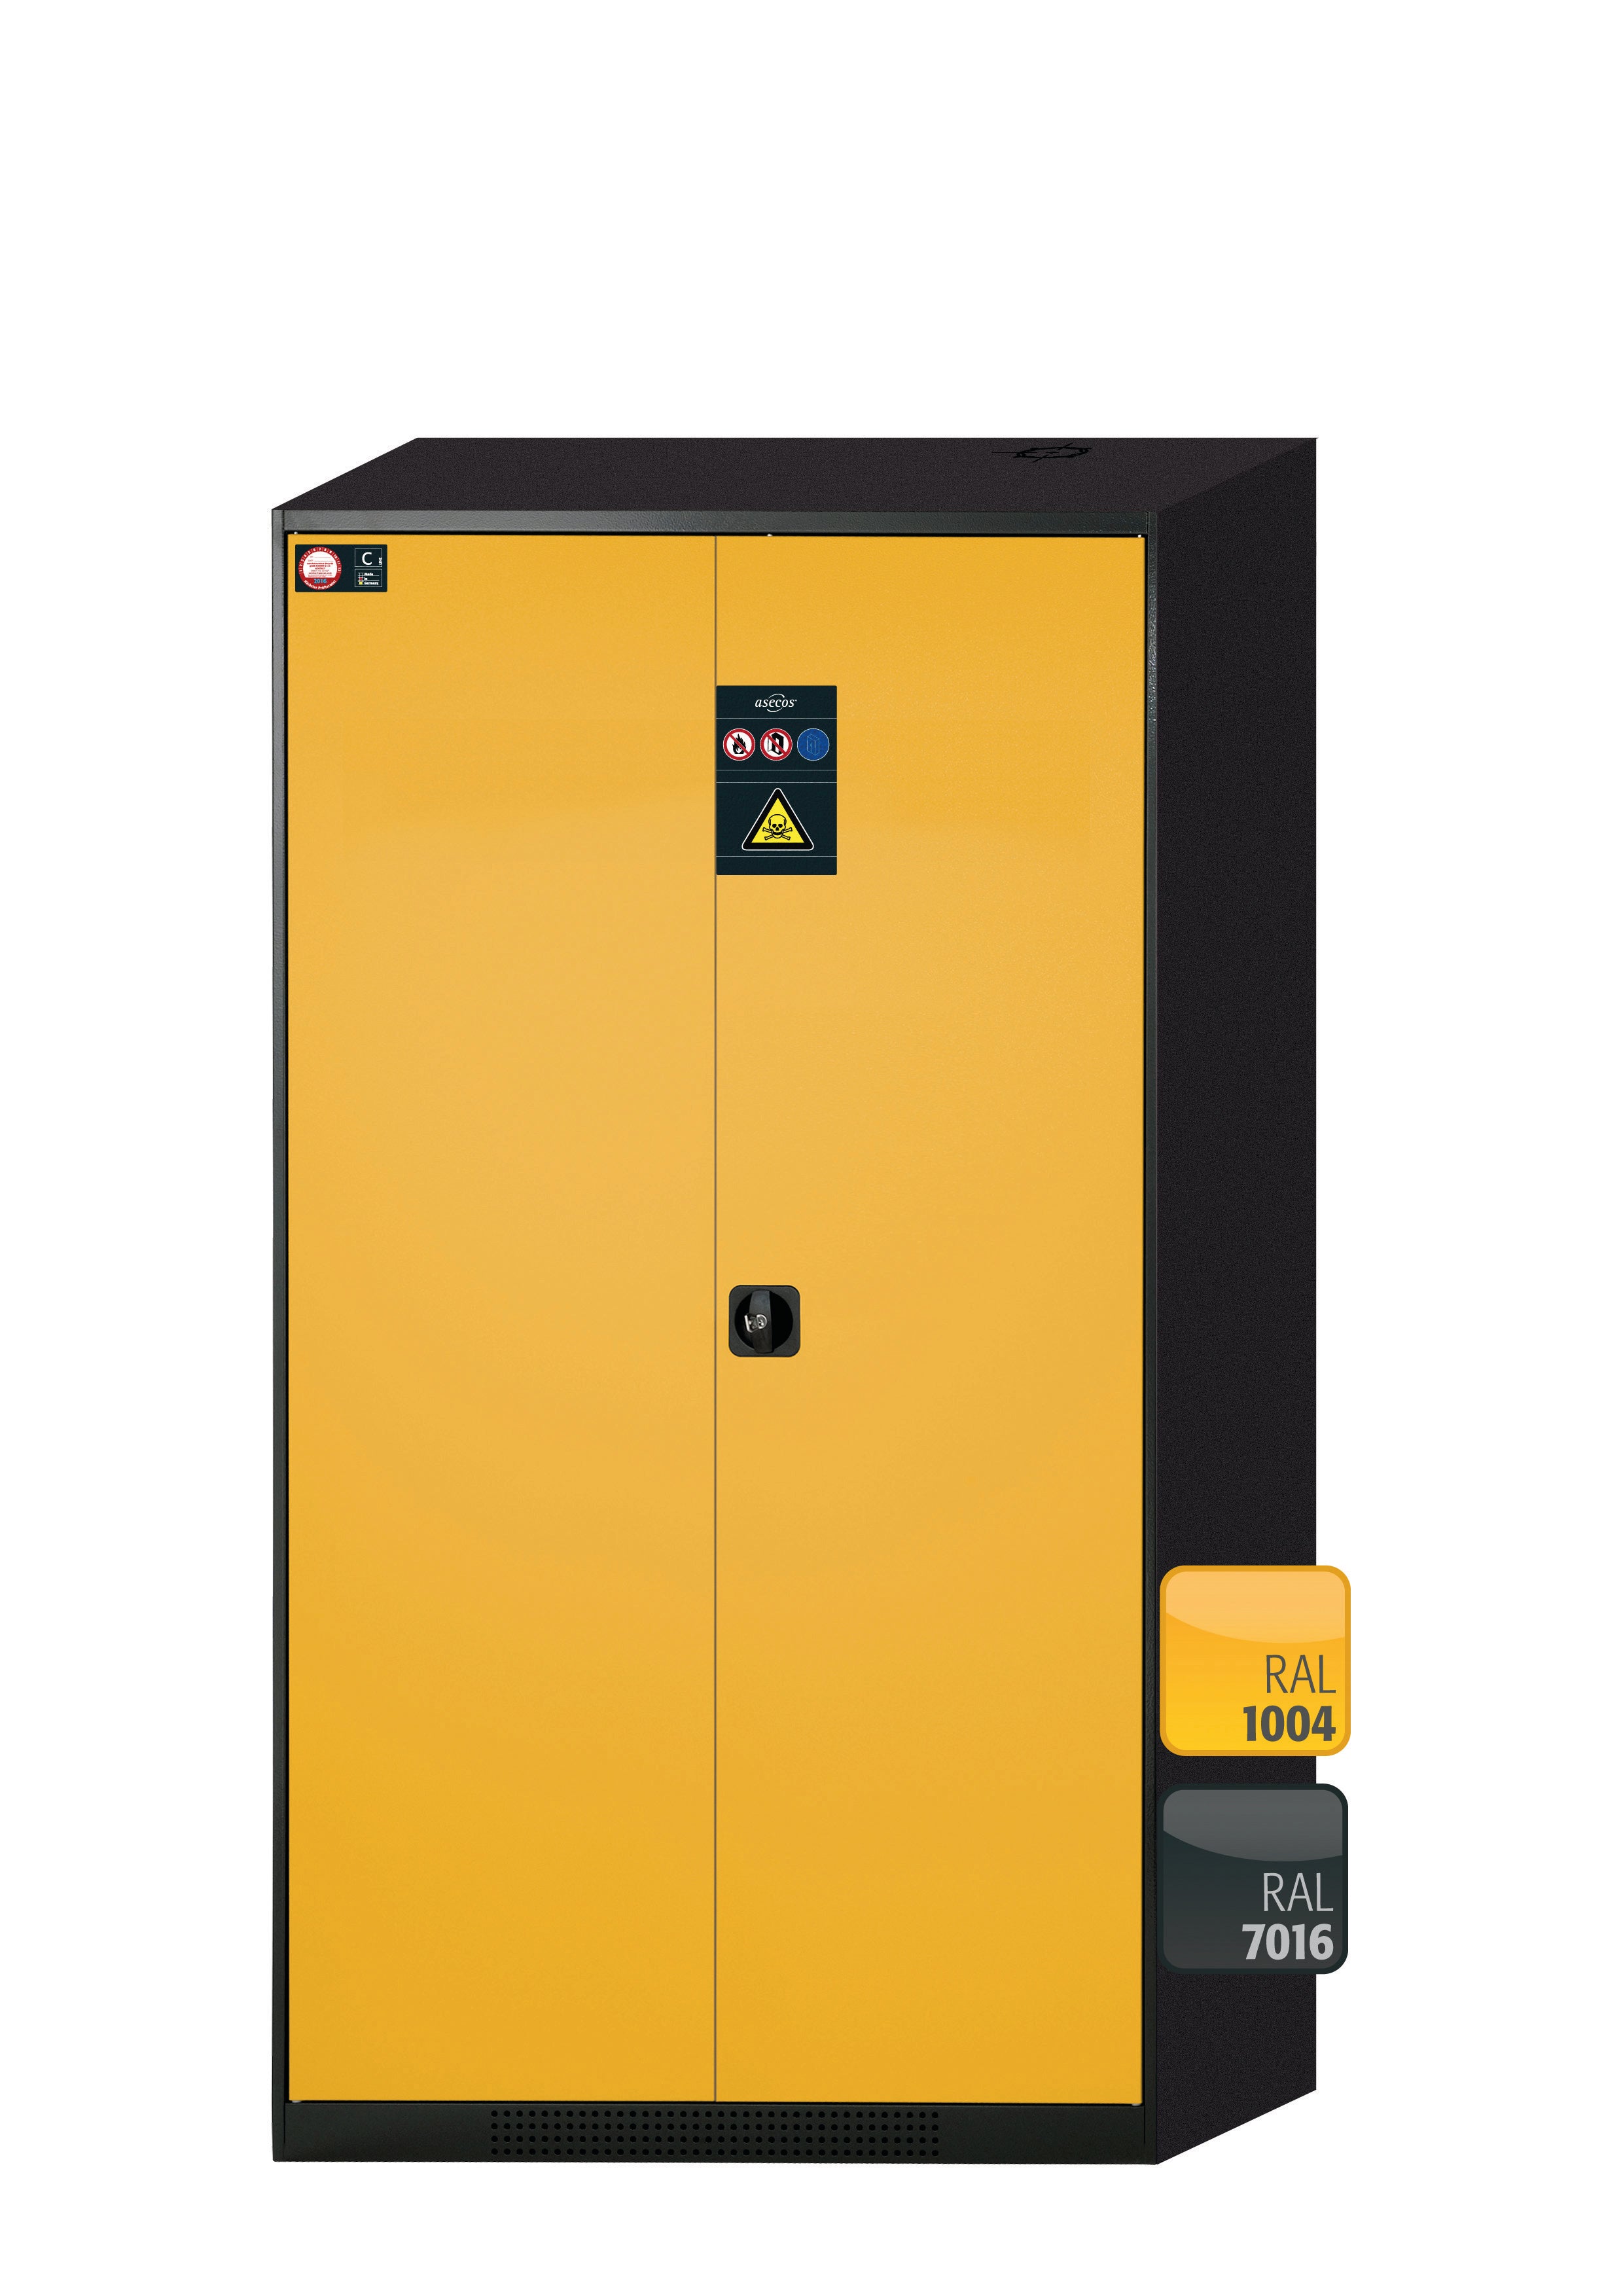 Armoire chimique CS-CLASSIC modèle CS.195.105 en jaune sécurité RAL 1004 avec 5 étagères coulissantes AbZ (tôle d'acier/polypropylène)